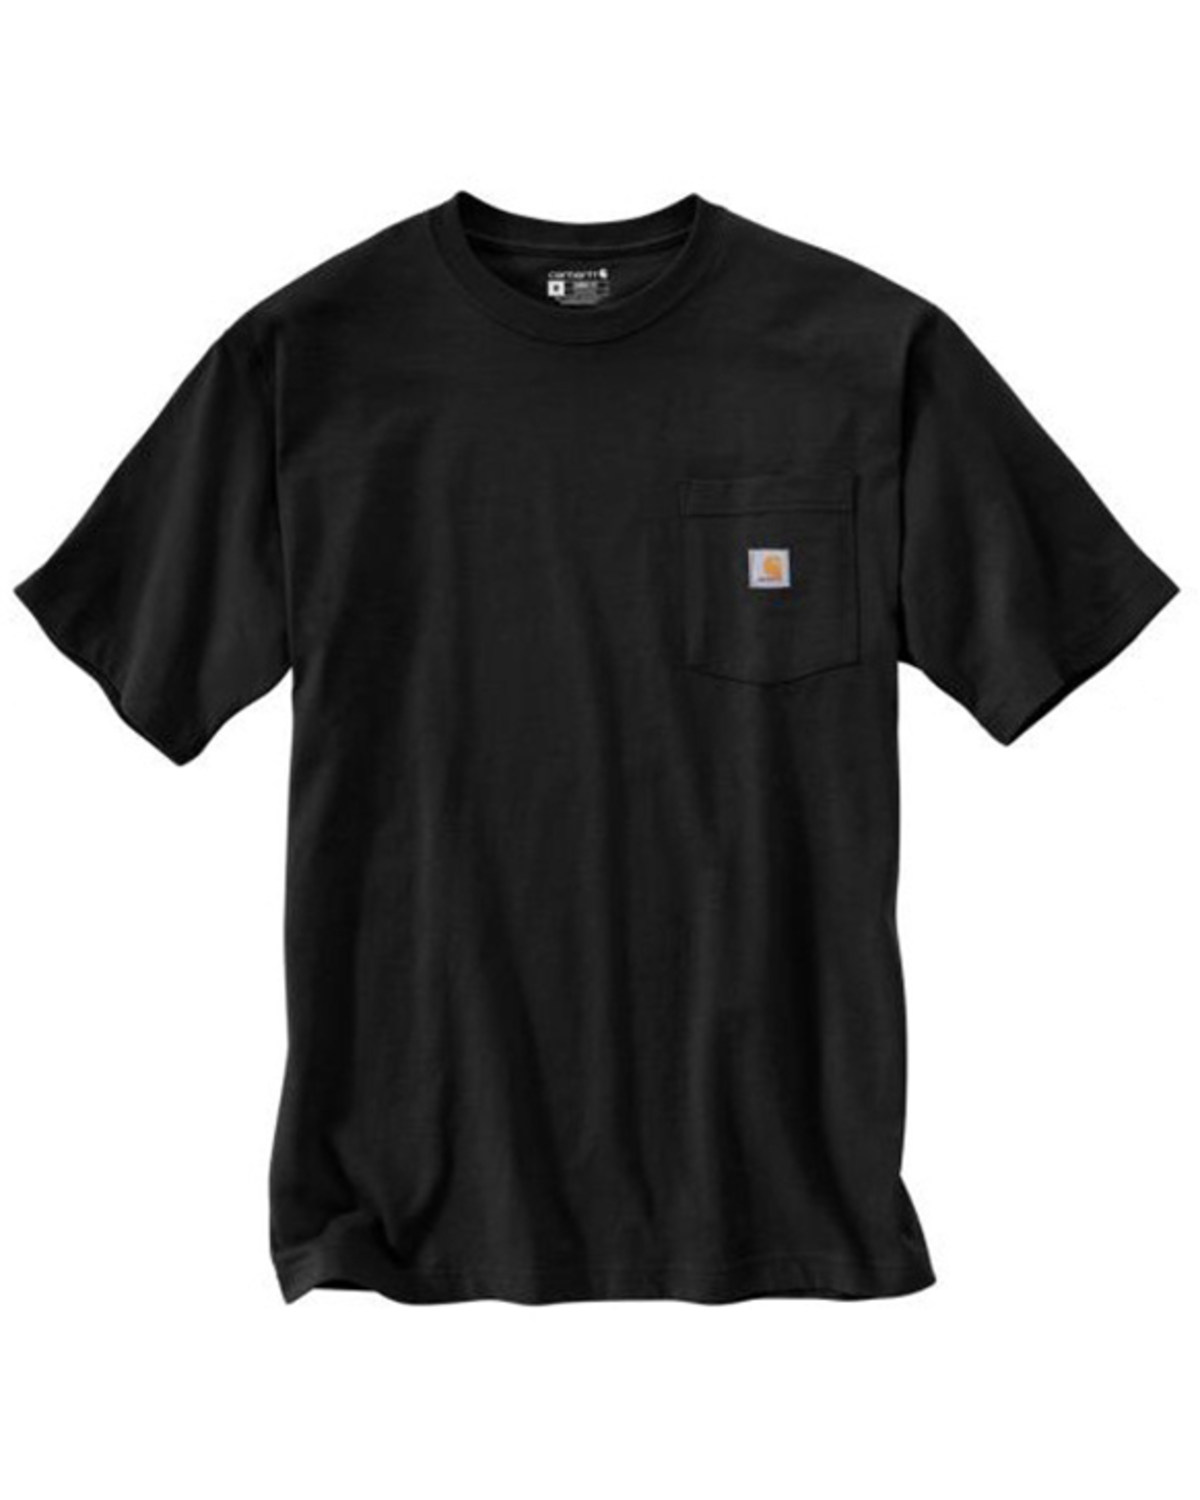 Carhartt Men's Loose Fit Heavyweight Short Sleeve Graphic Work T-Shirt